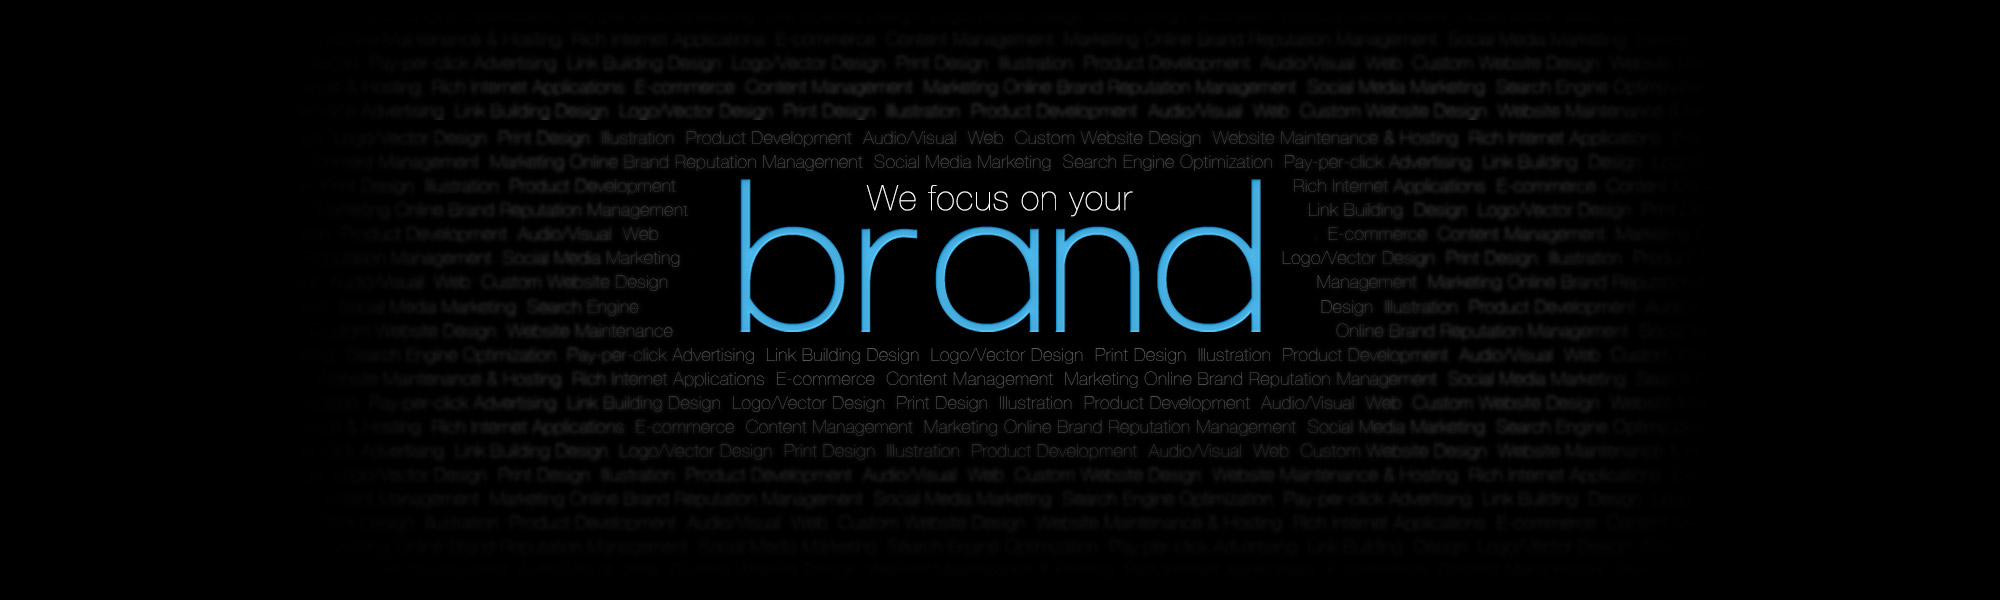 brand promotion agency in surat - techiflyer